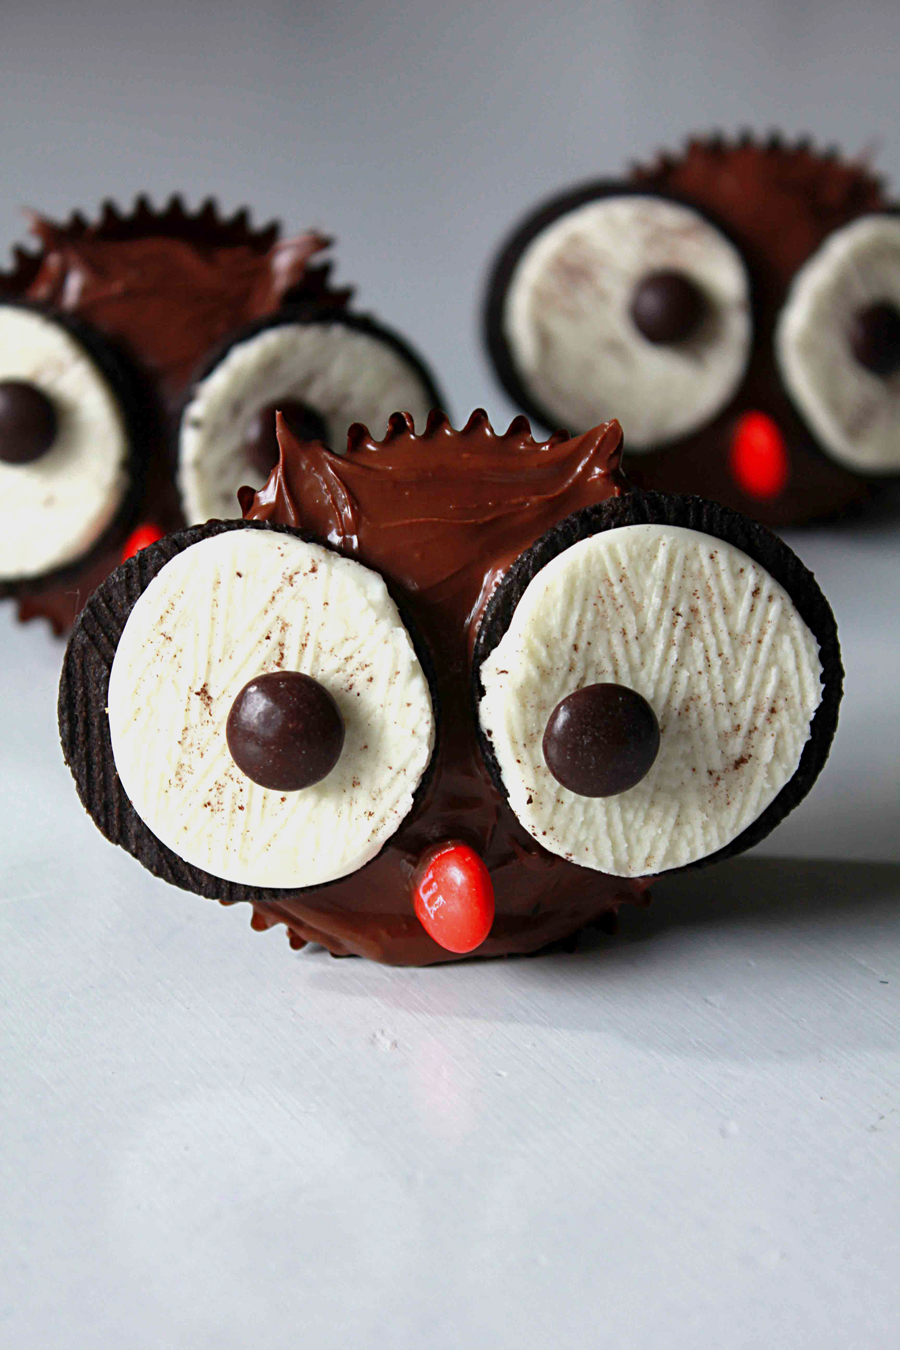 38 Delicious Halloween Cupcakes